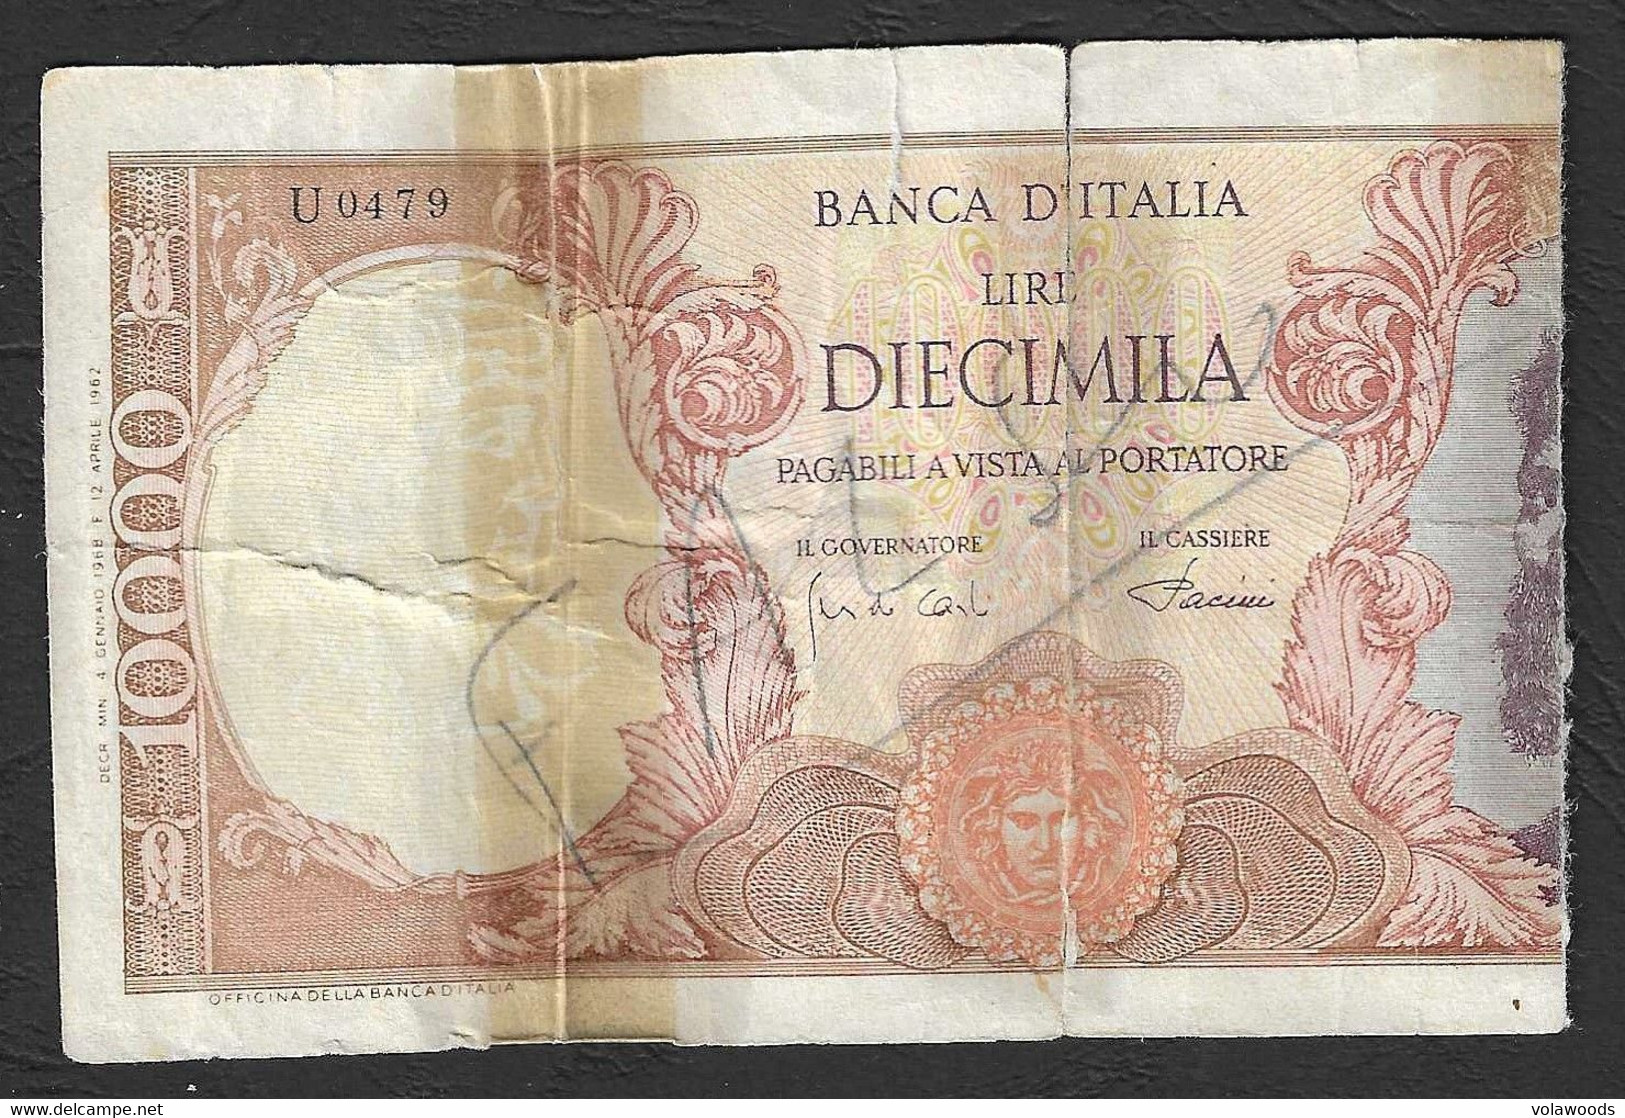 Italia - Banconota Circolata Da 10.000 Lire "Buonarroti" Falso D'epoca Circolato P-97d - 1968 - [ 8] Fictifs & Specimens